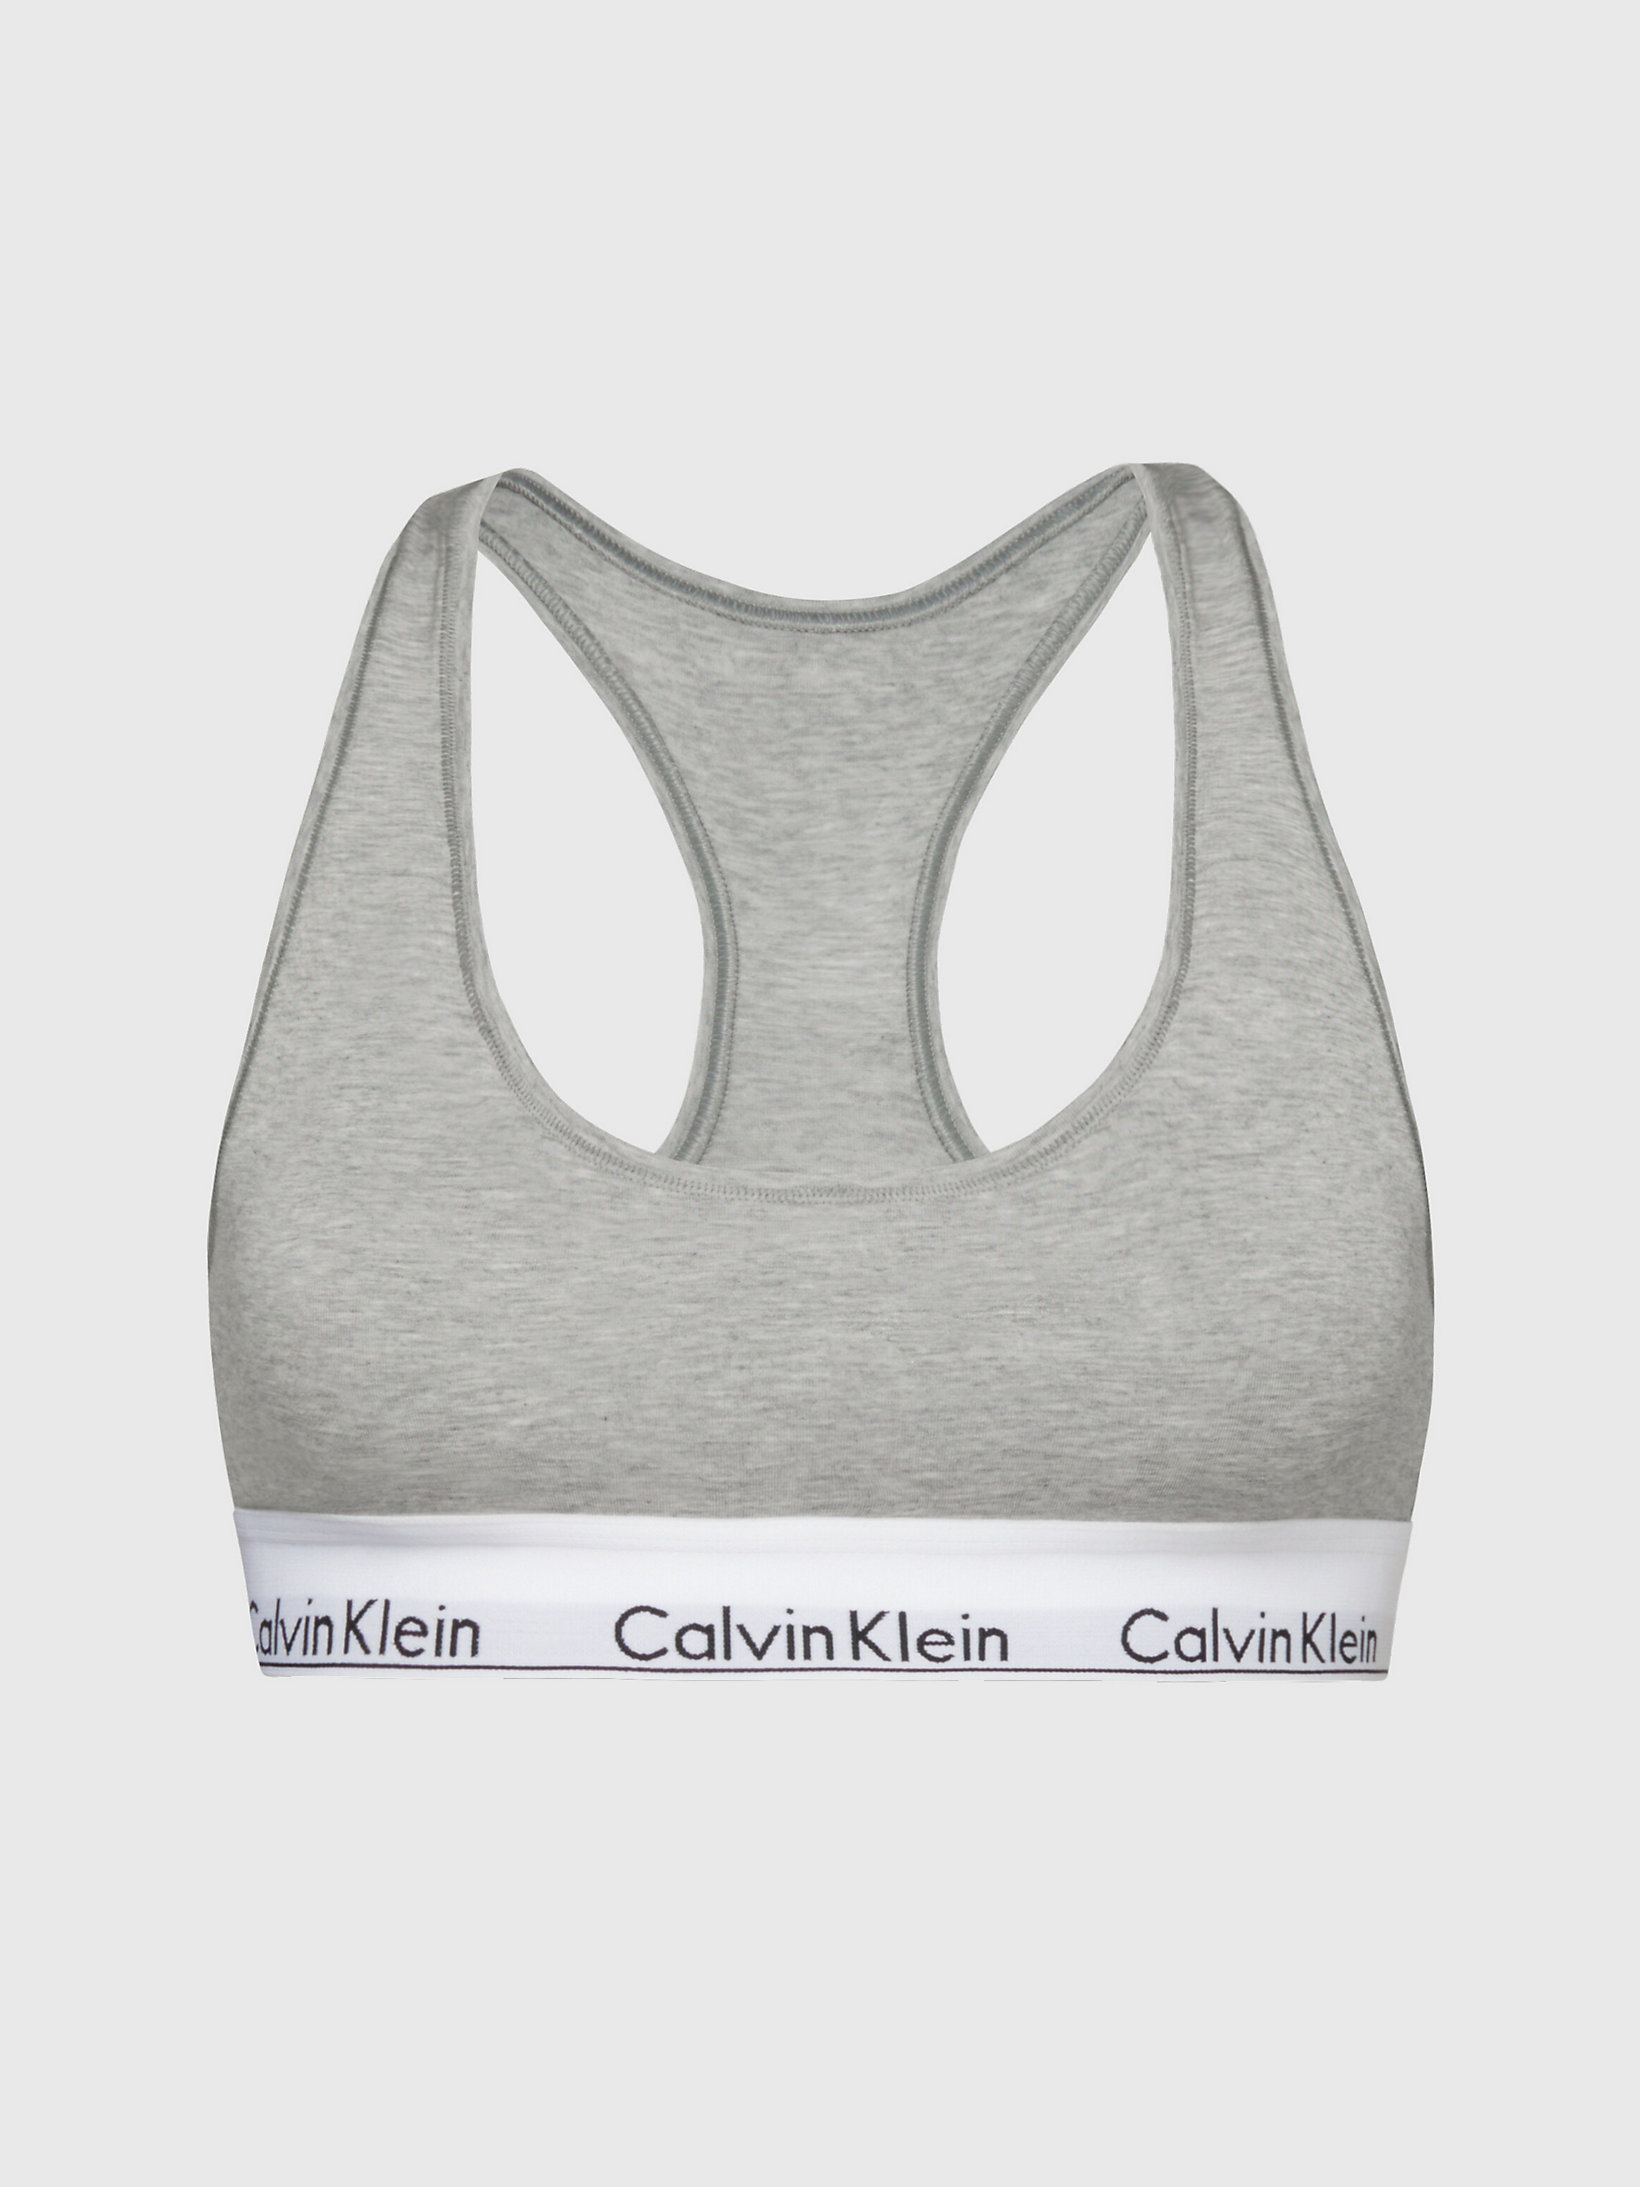 Corpiño - Modern Cotton > Grey Heather > undefined mujer > Calvin Klein